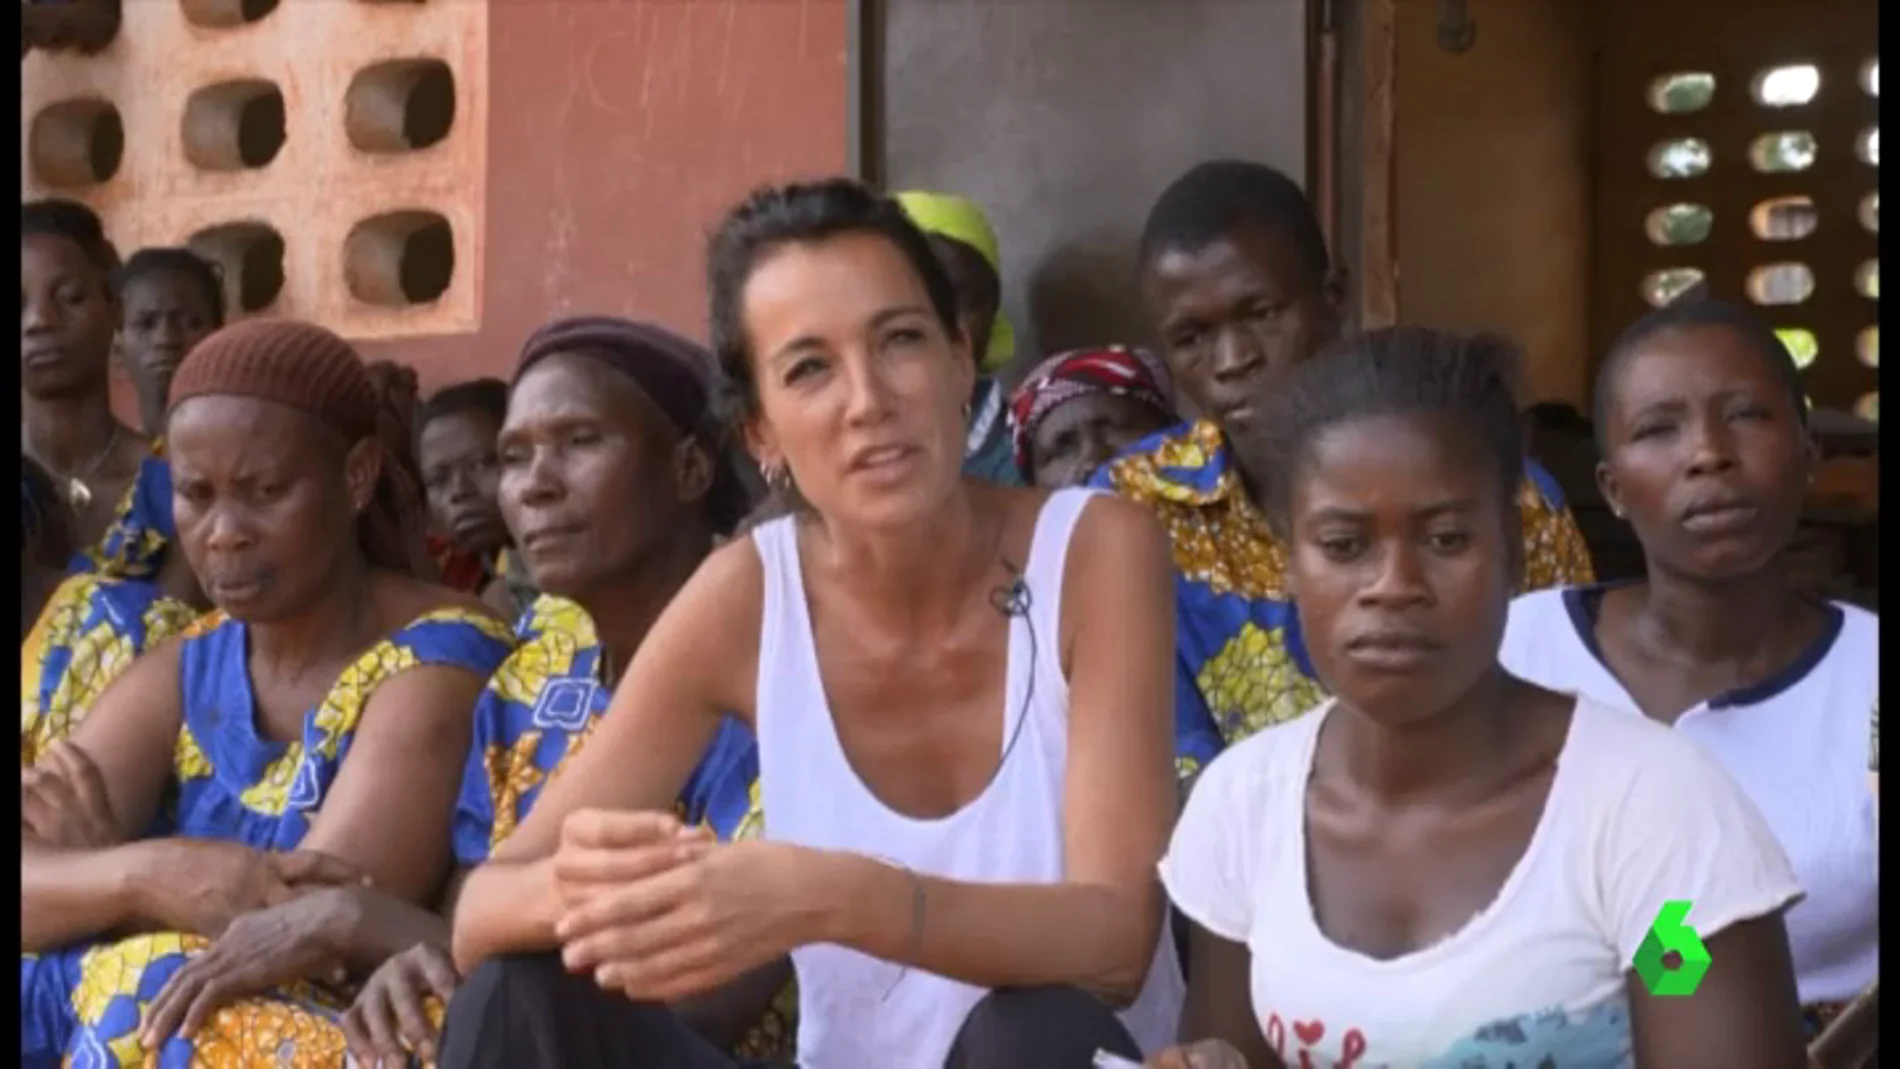 Global Humanitaria lanza varios proyectos de alfabetización de mujeres en Costa de Marfil: "Les devolvemos el derecho que les fue robado cuando eran niñas"